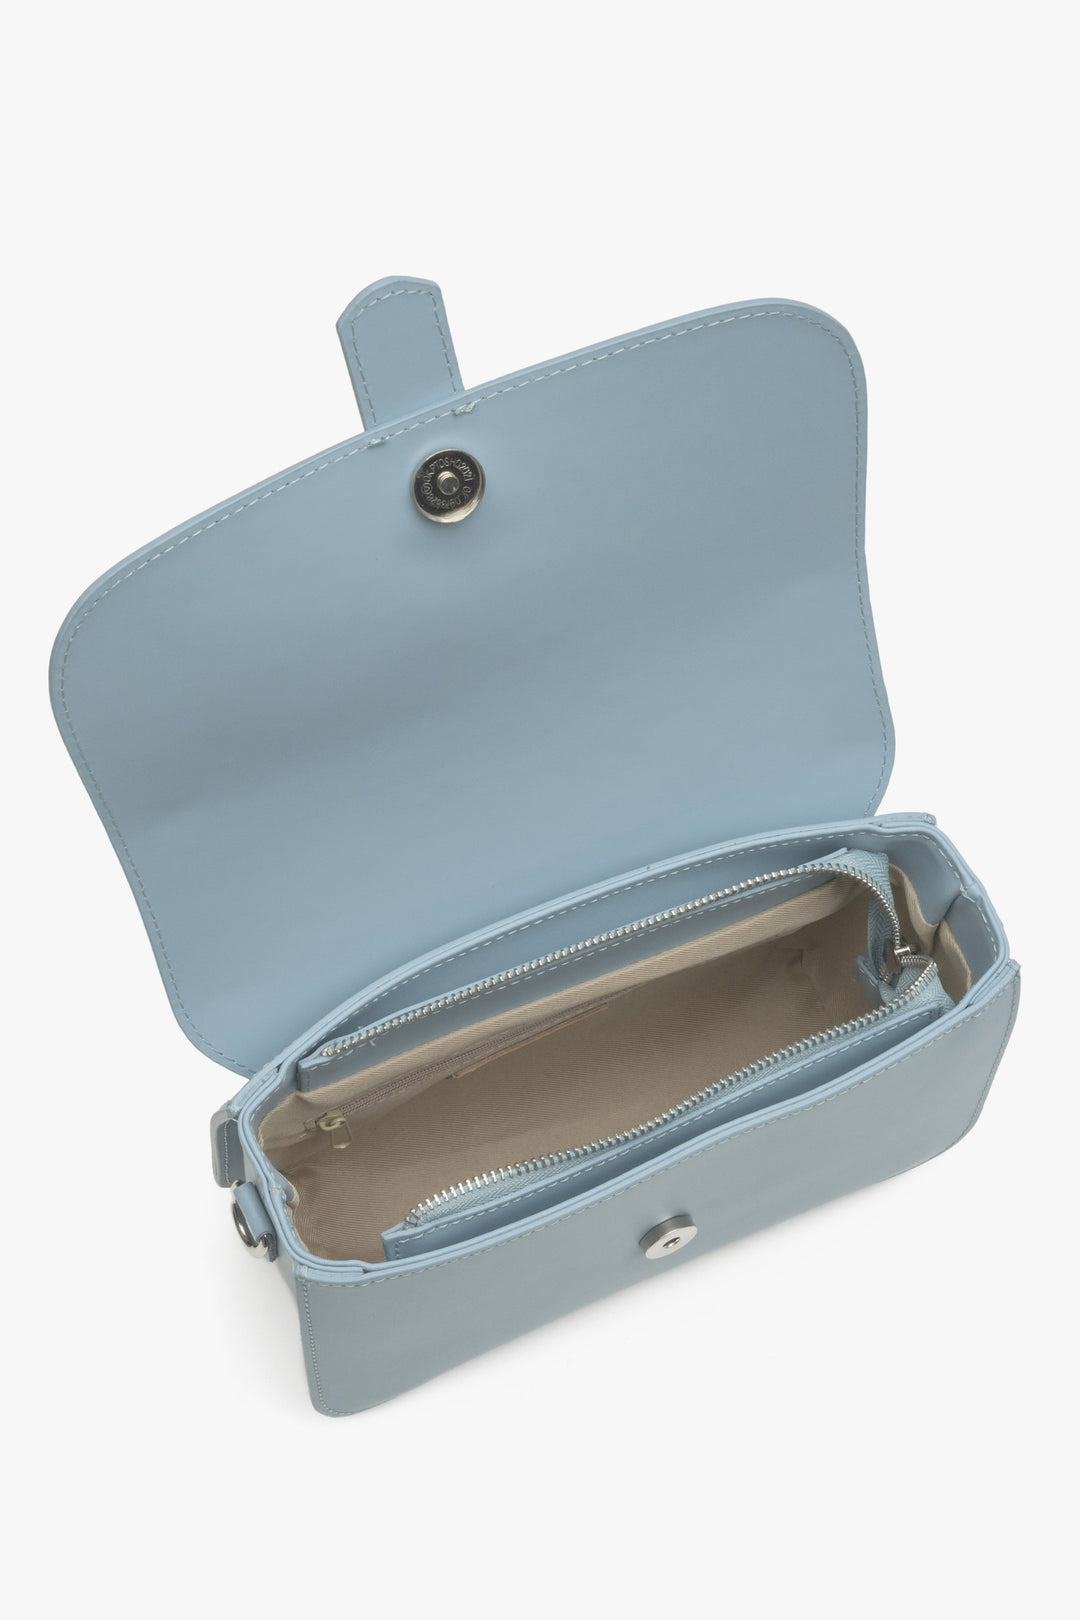 Damska niebieska torebka skórzana Estro - prezentacja wnętrza modelu.